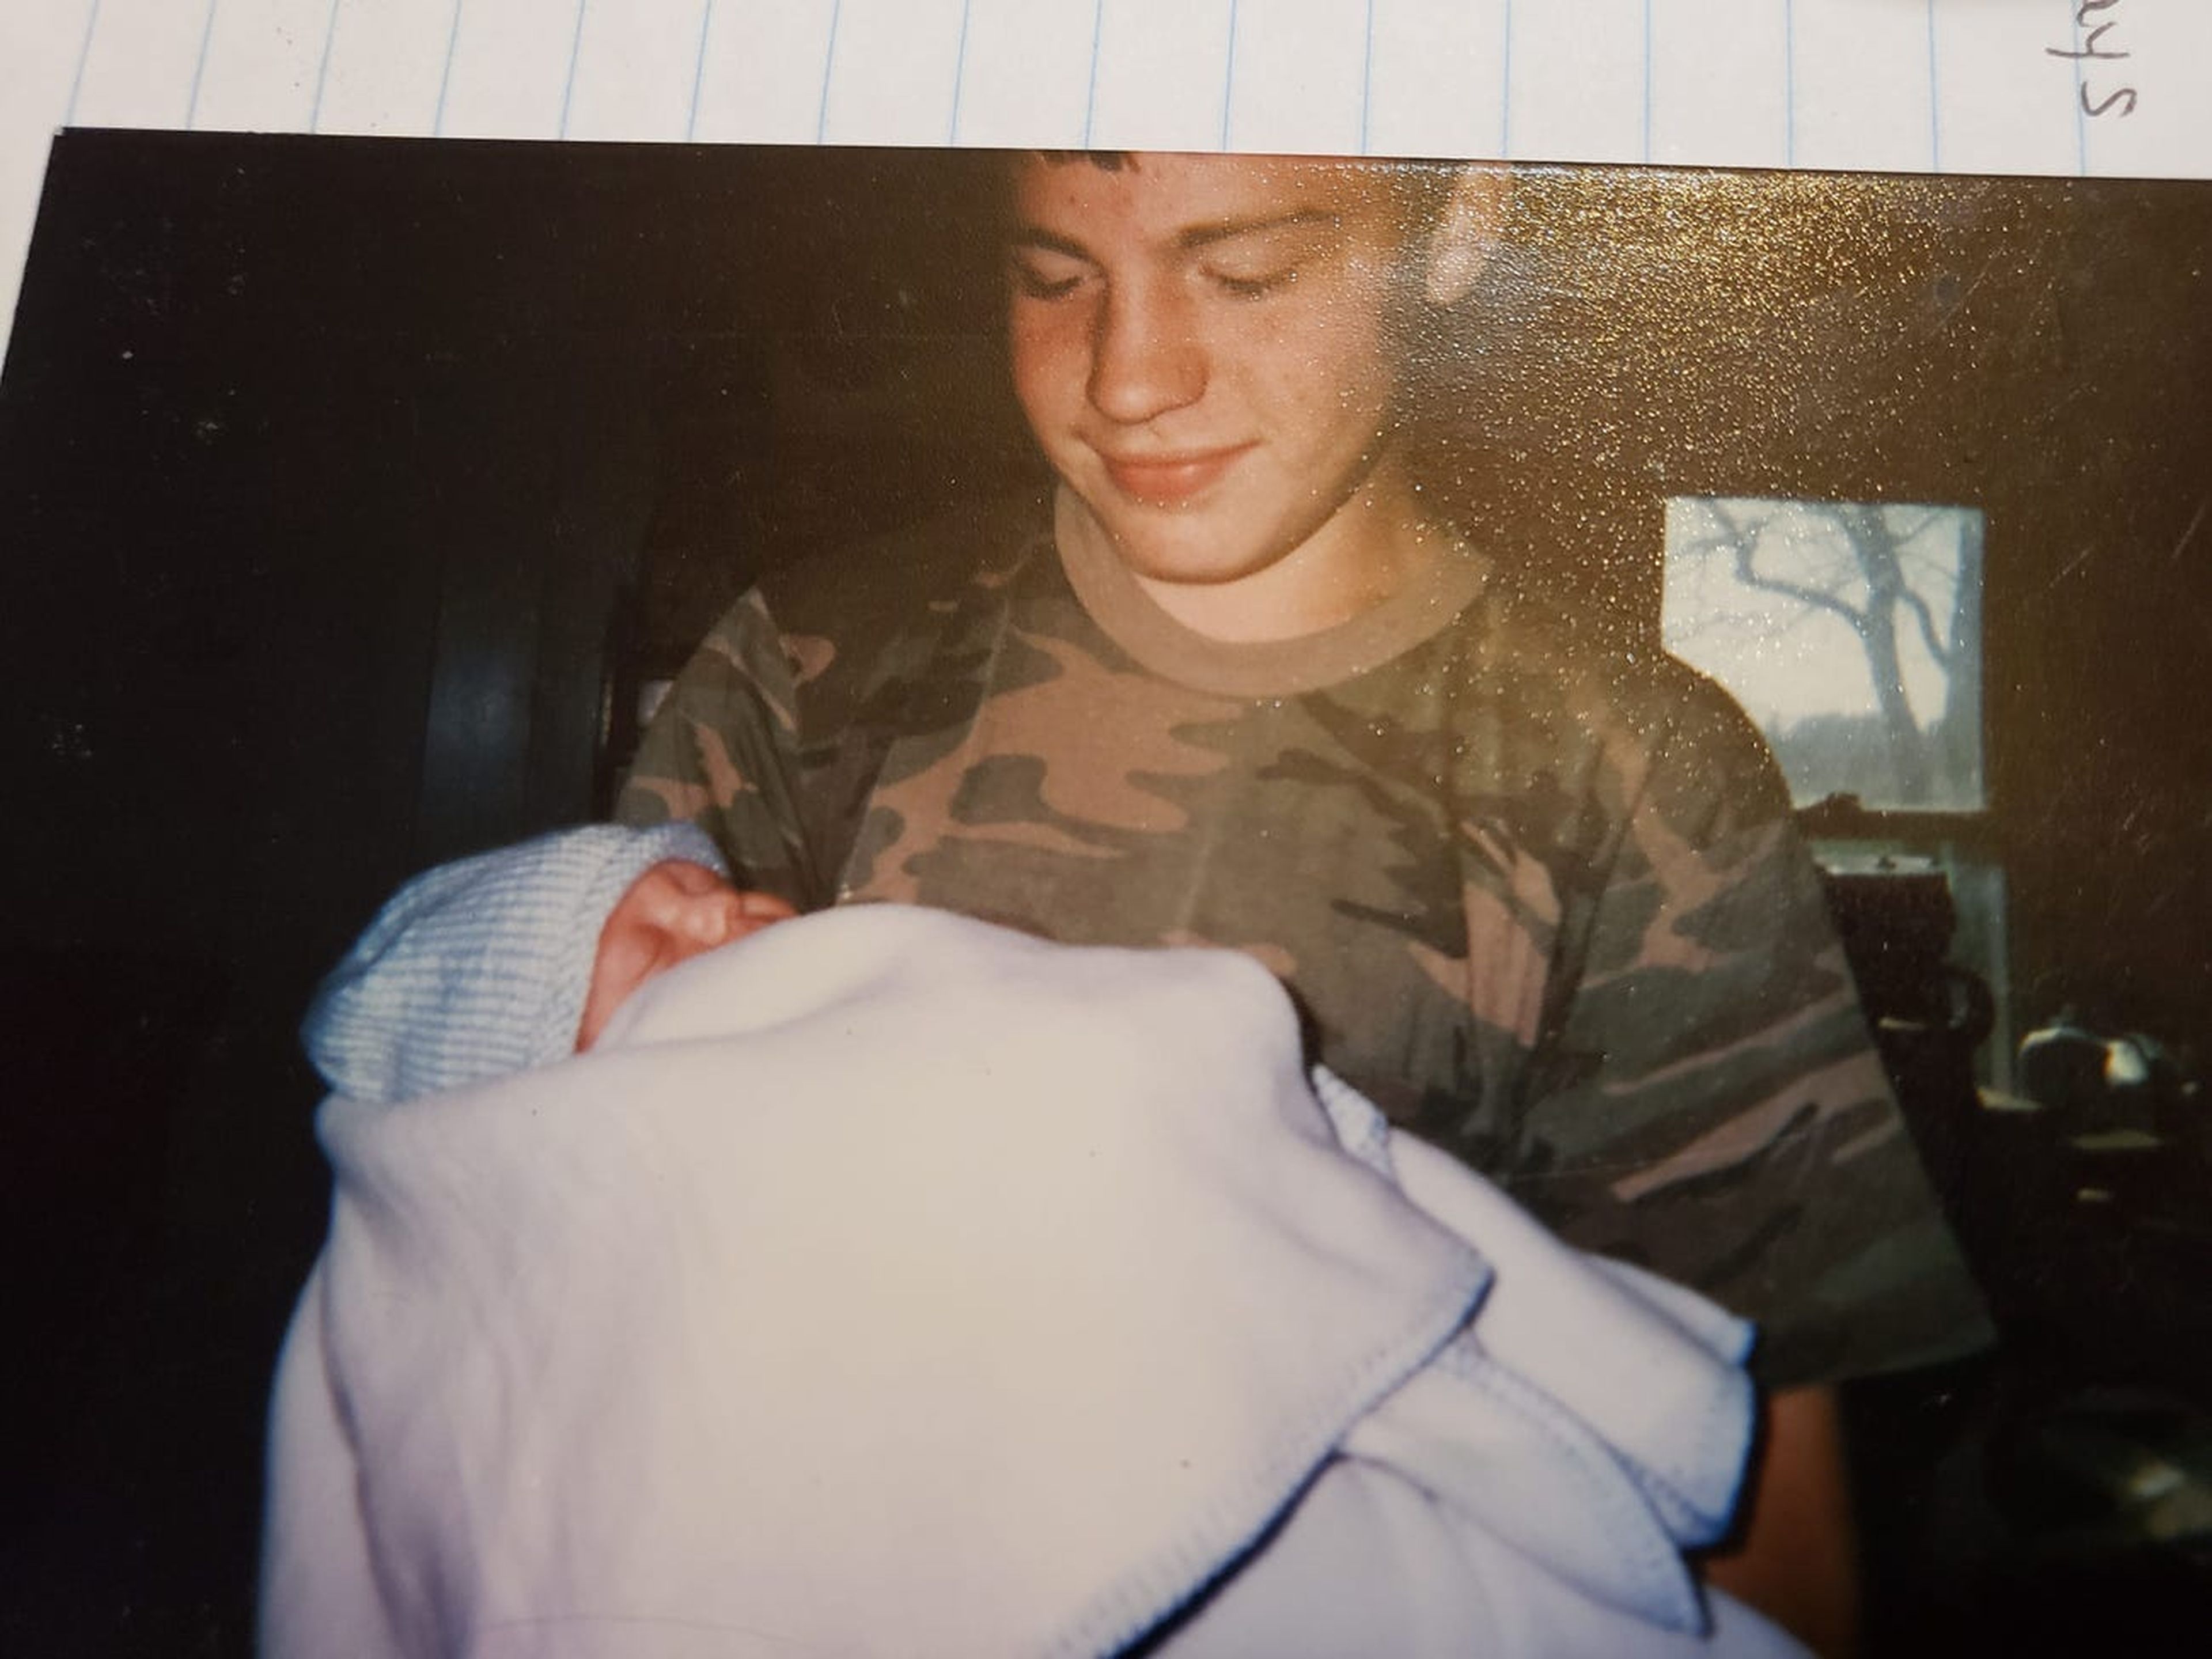 Ronnie Peale Jr. en una foto de adolescente con su sobrino en brazos.